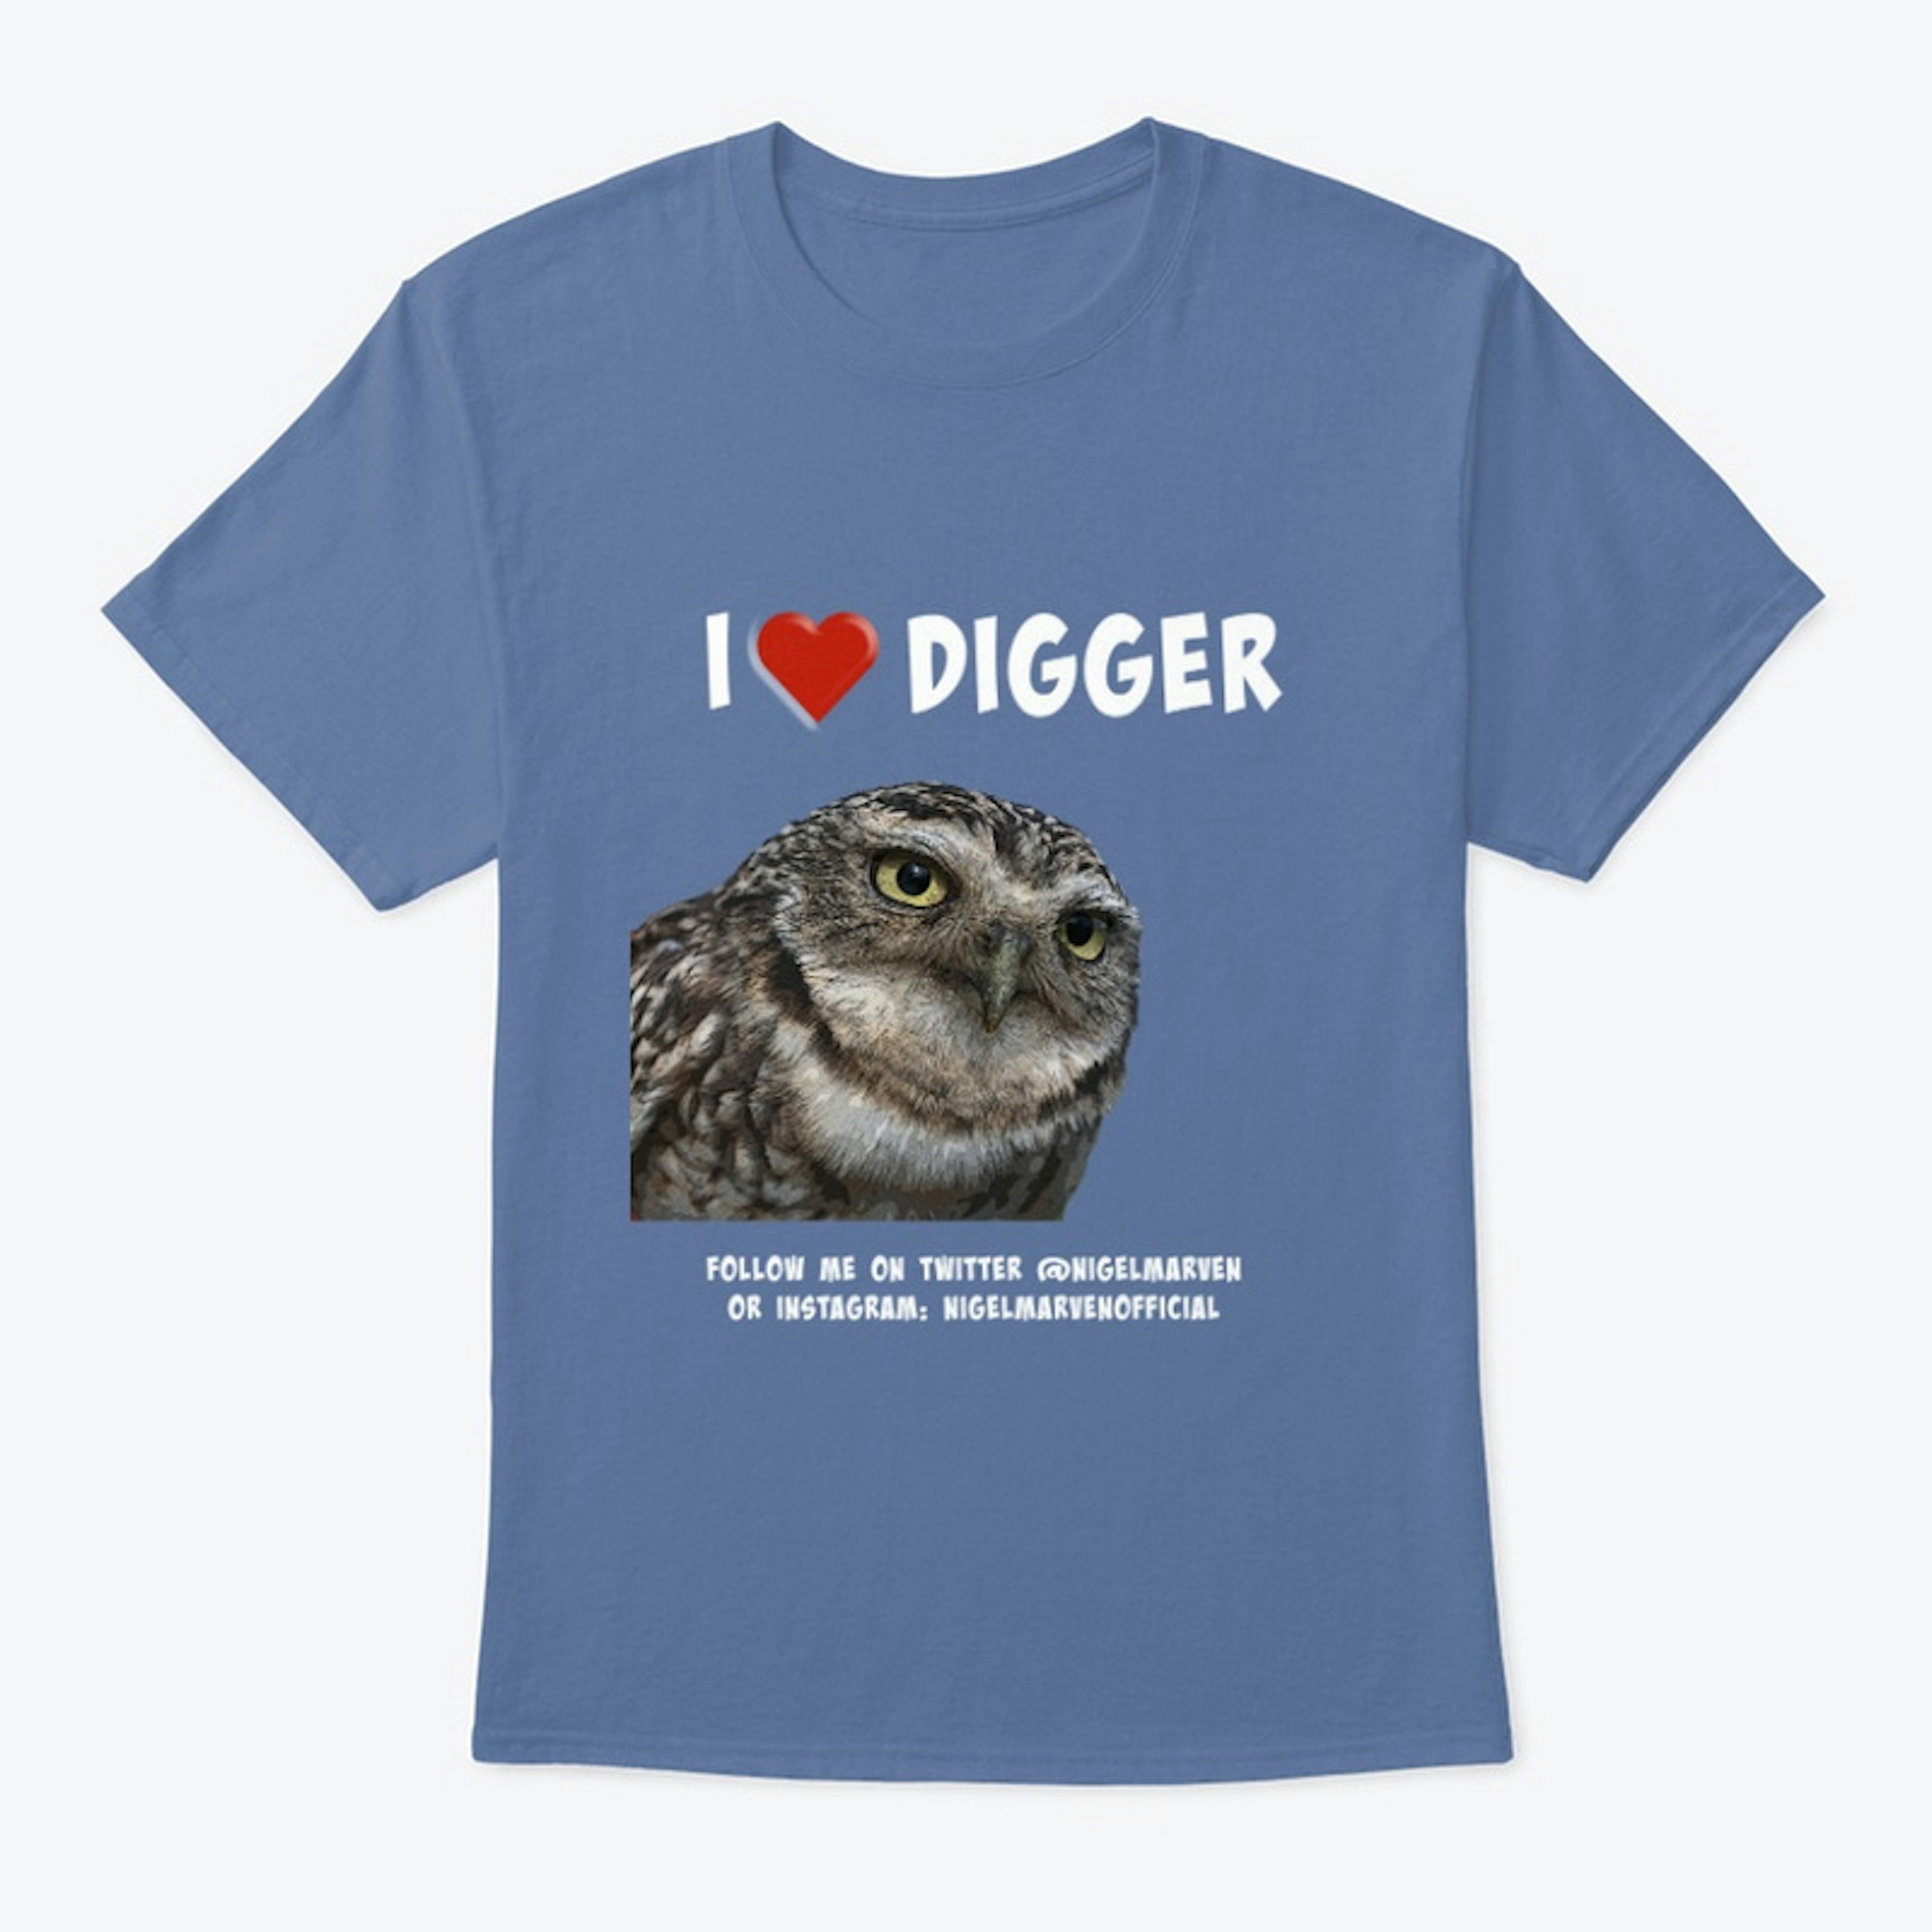 I Love Digger!